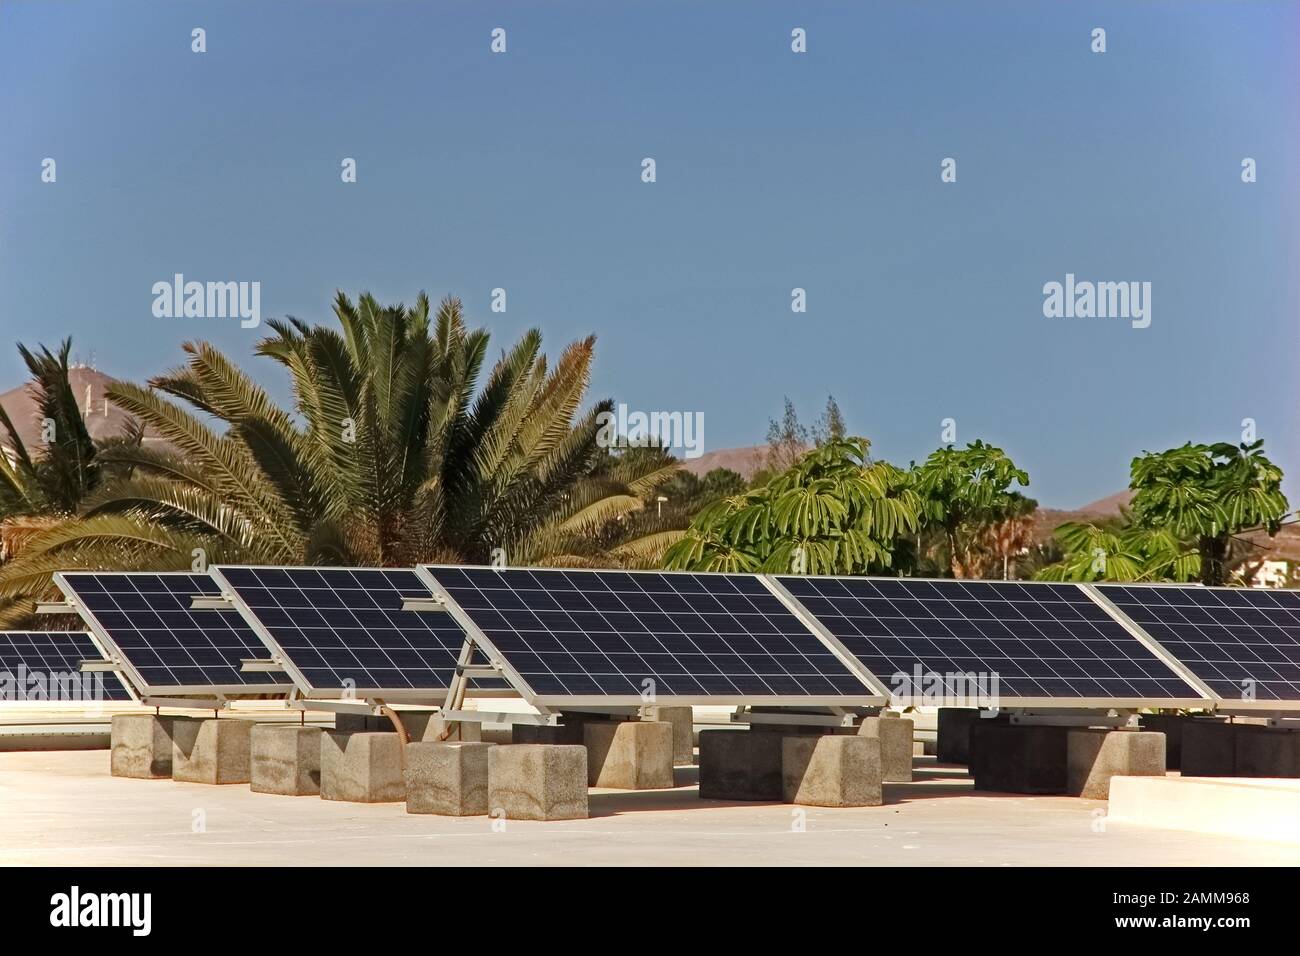 Paneles solares que proporcionan electricidad al hotel, Lanzarote Foto de stock